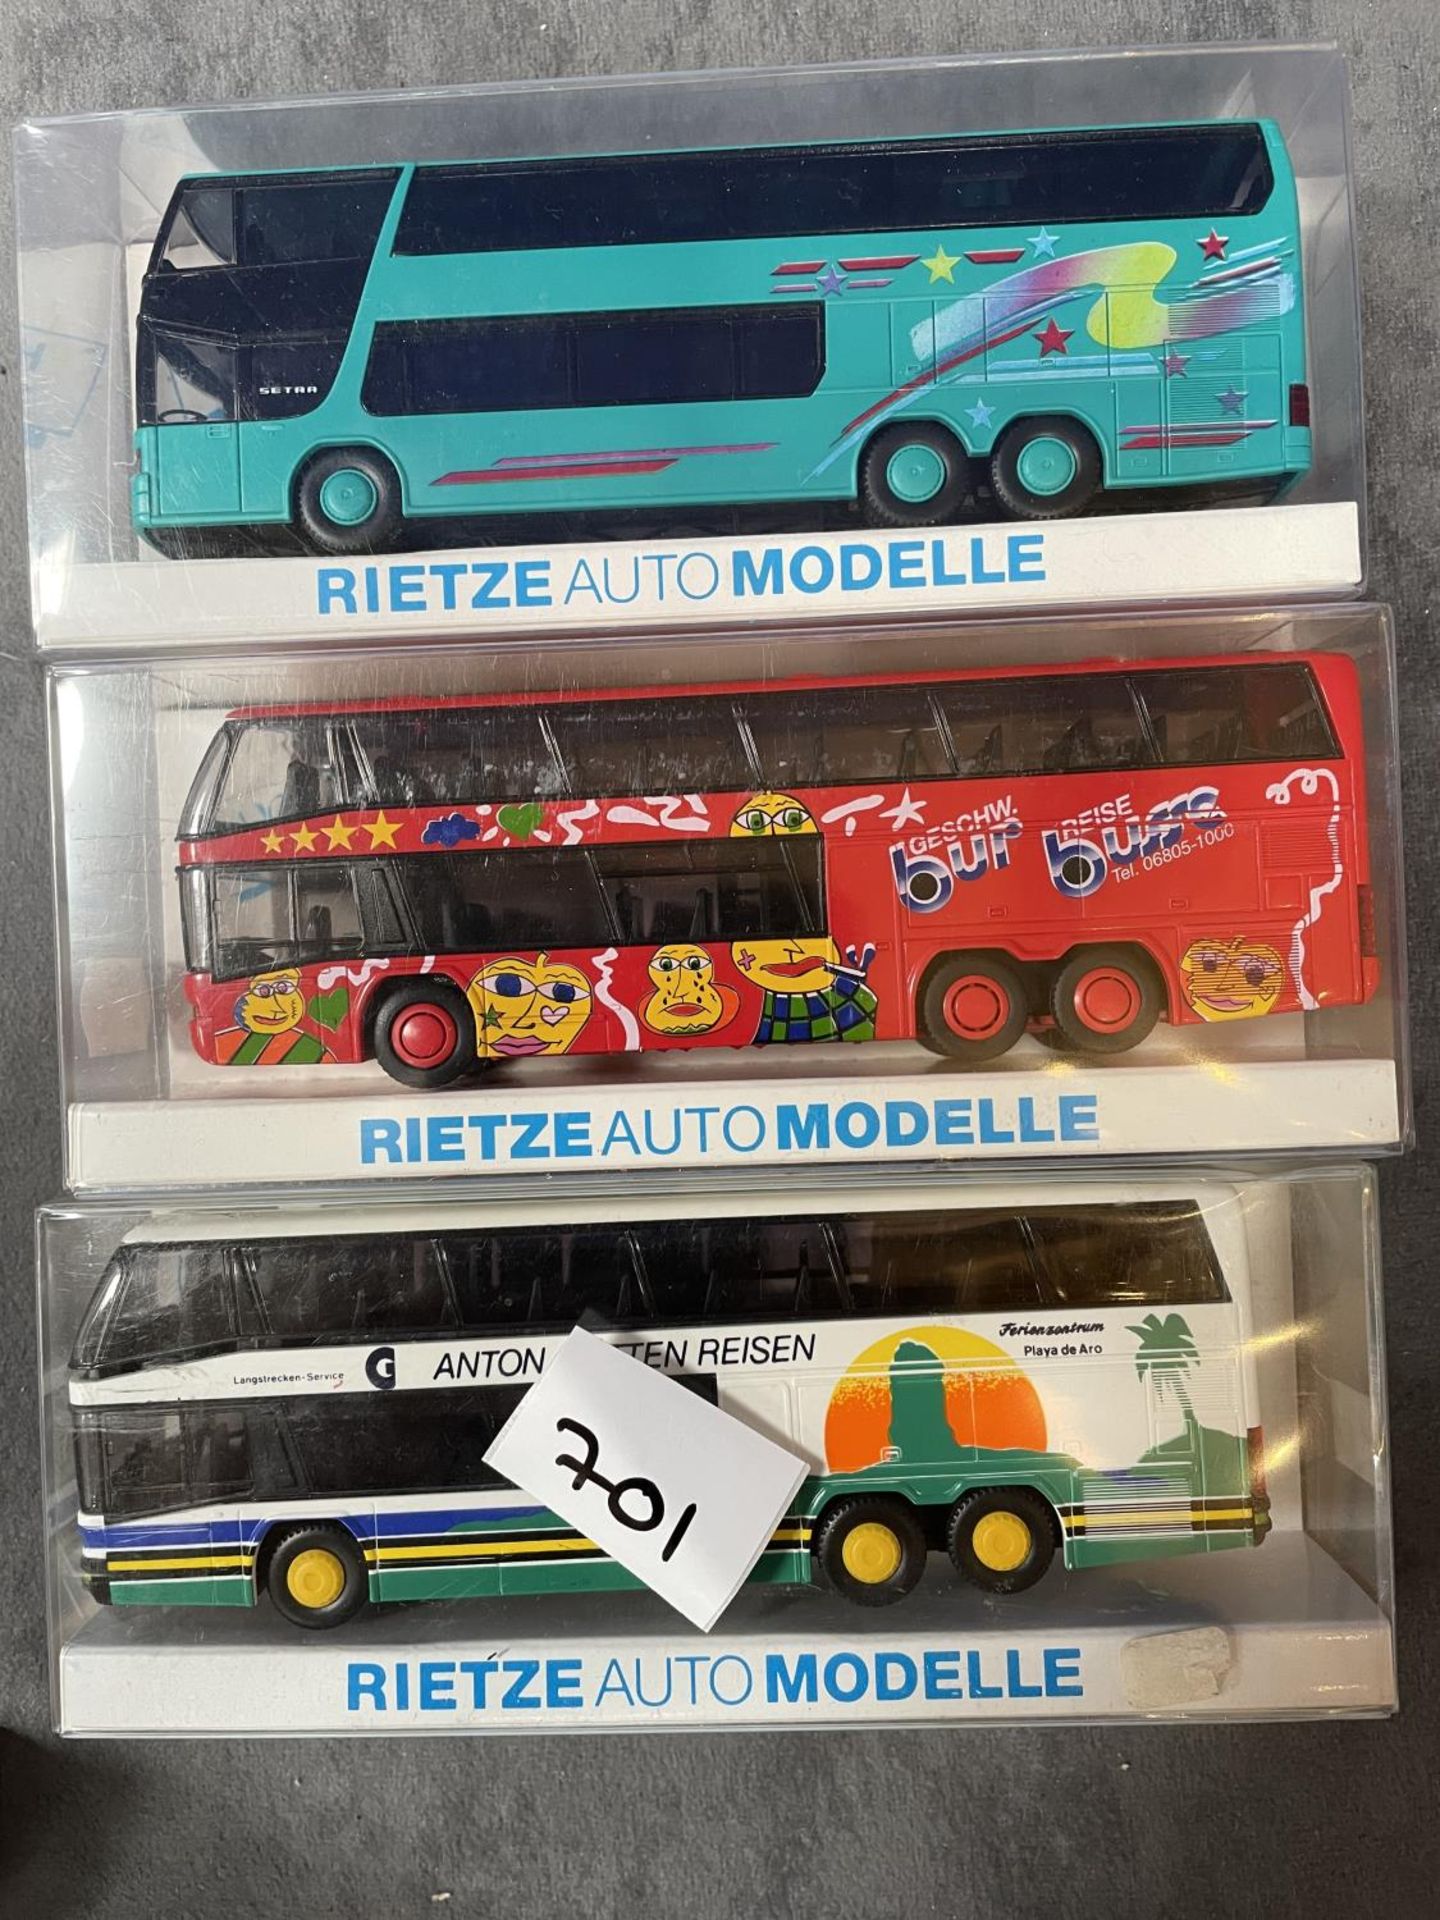 3 x Boxed Rietze Auto Modelle Coach/Bus 1/87 Scale Model Boxed